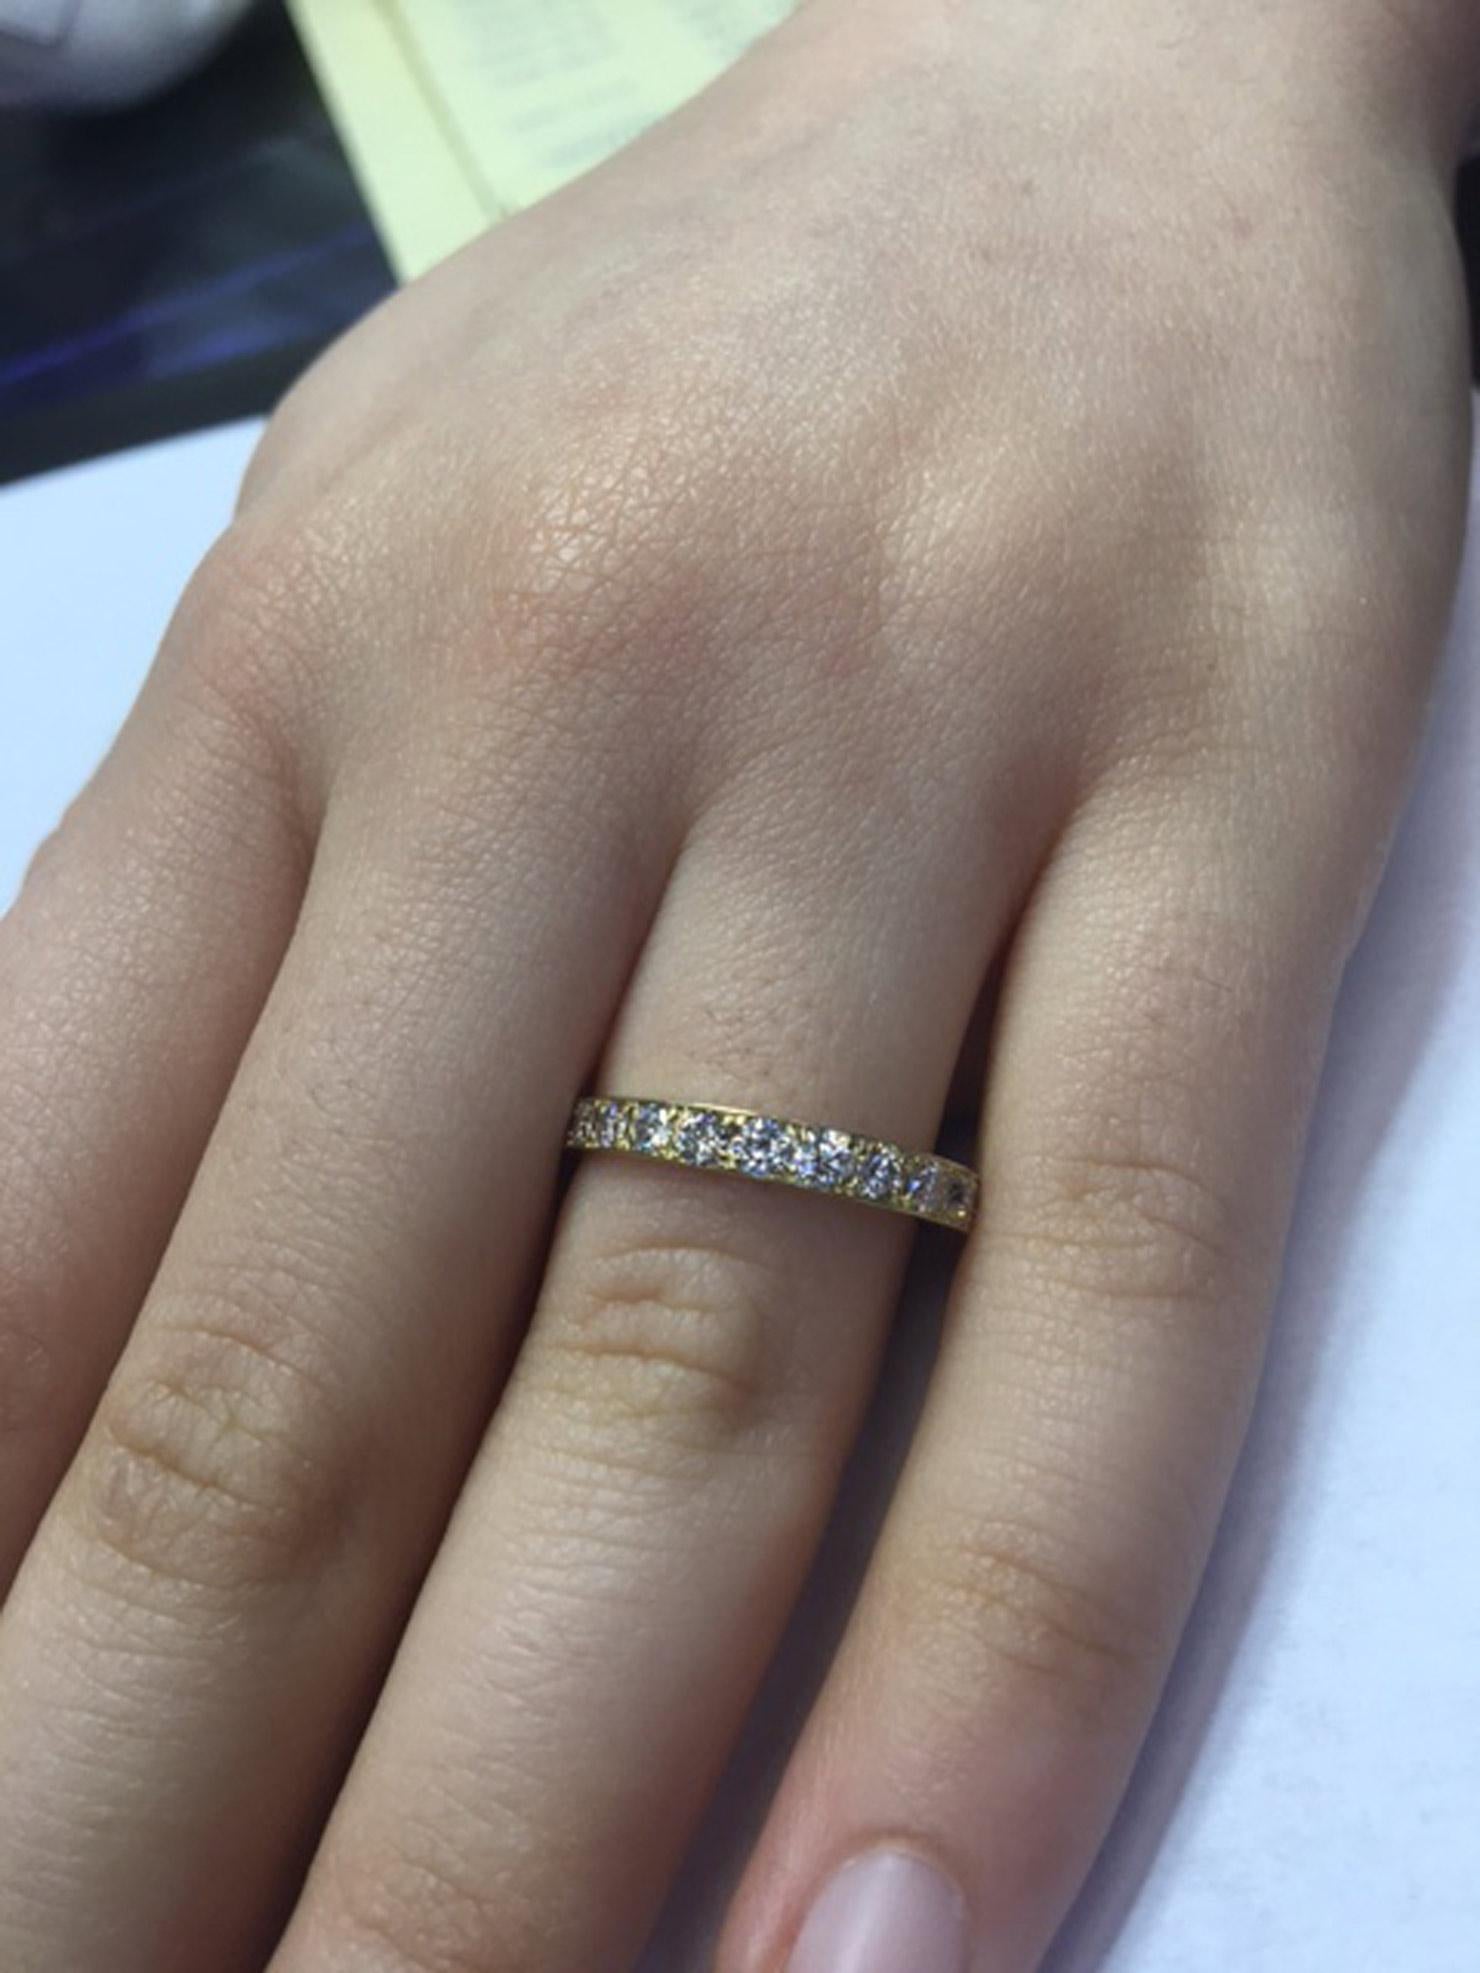 Magnifiquement fabriquée à la main en or jaune 18 carats, cette alliance fine est sertie de diamants blancs de taille brillant sur les 3/4 de la circonférence. Cela permet de s'assurer que la partie du bas du doigt qui heurte souvent une surface ne